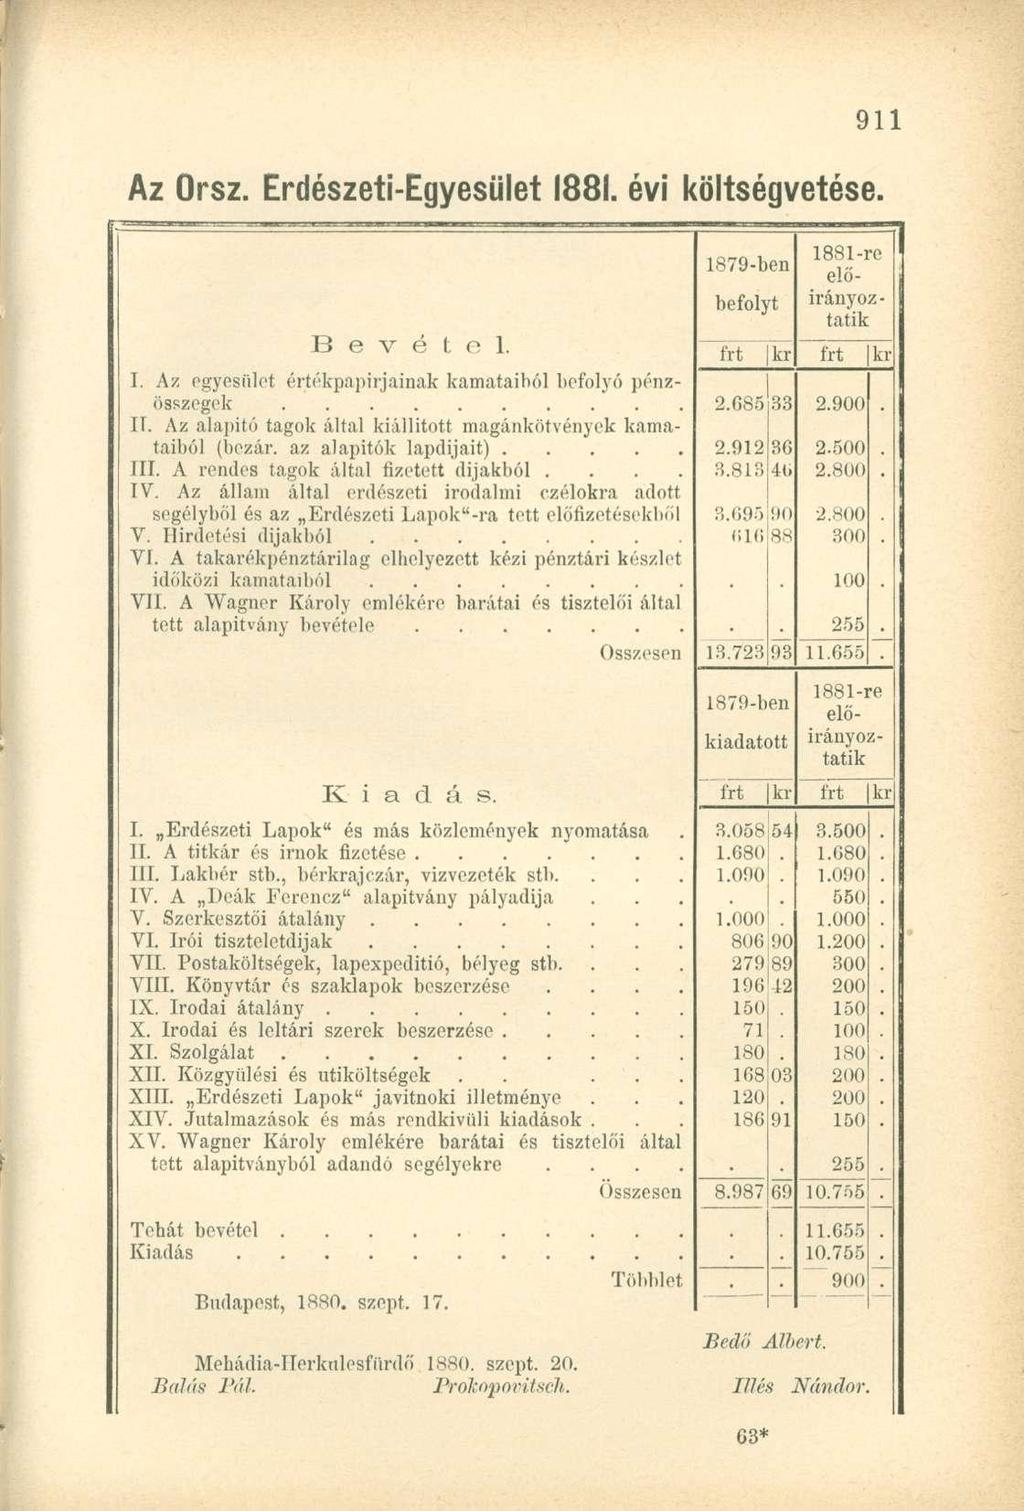 Az Orsz. Erdészeti-Egyesület 1881. évi költségvetése. 1879-ben 1881-re előbefolyt irányoztátik Bevétel. frt kr frt kr I. Az pgyesiilet értékpapírjainak kamataiból befolyó pénz- II.